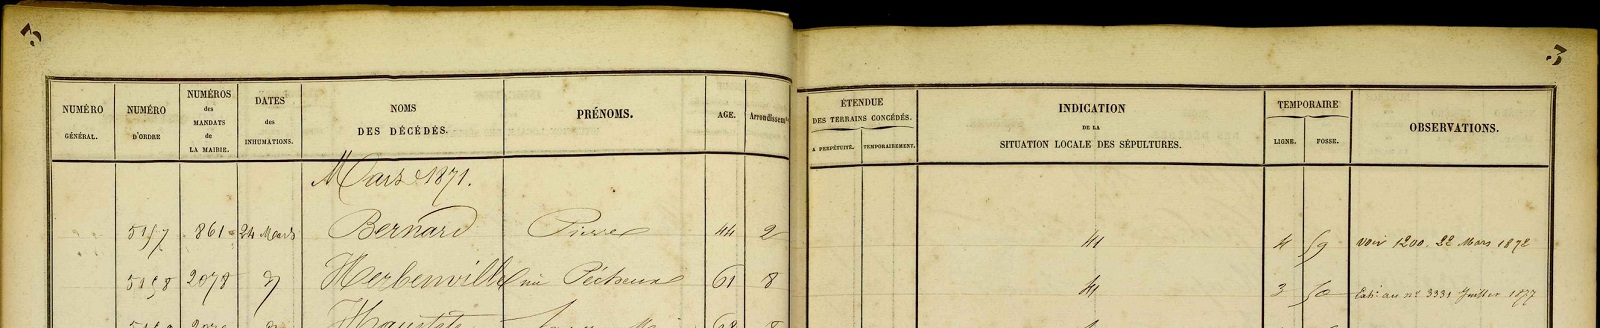 Registre journalier d'inhumation 1871, cimetière de Montmartre